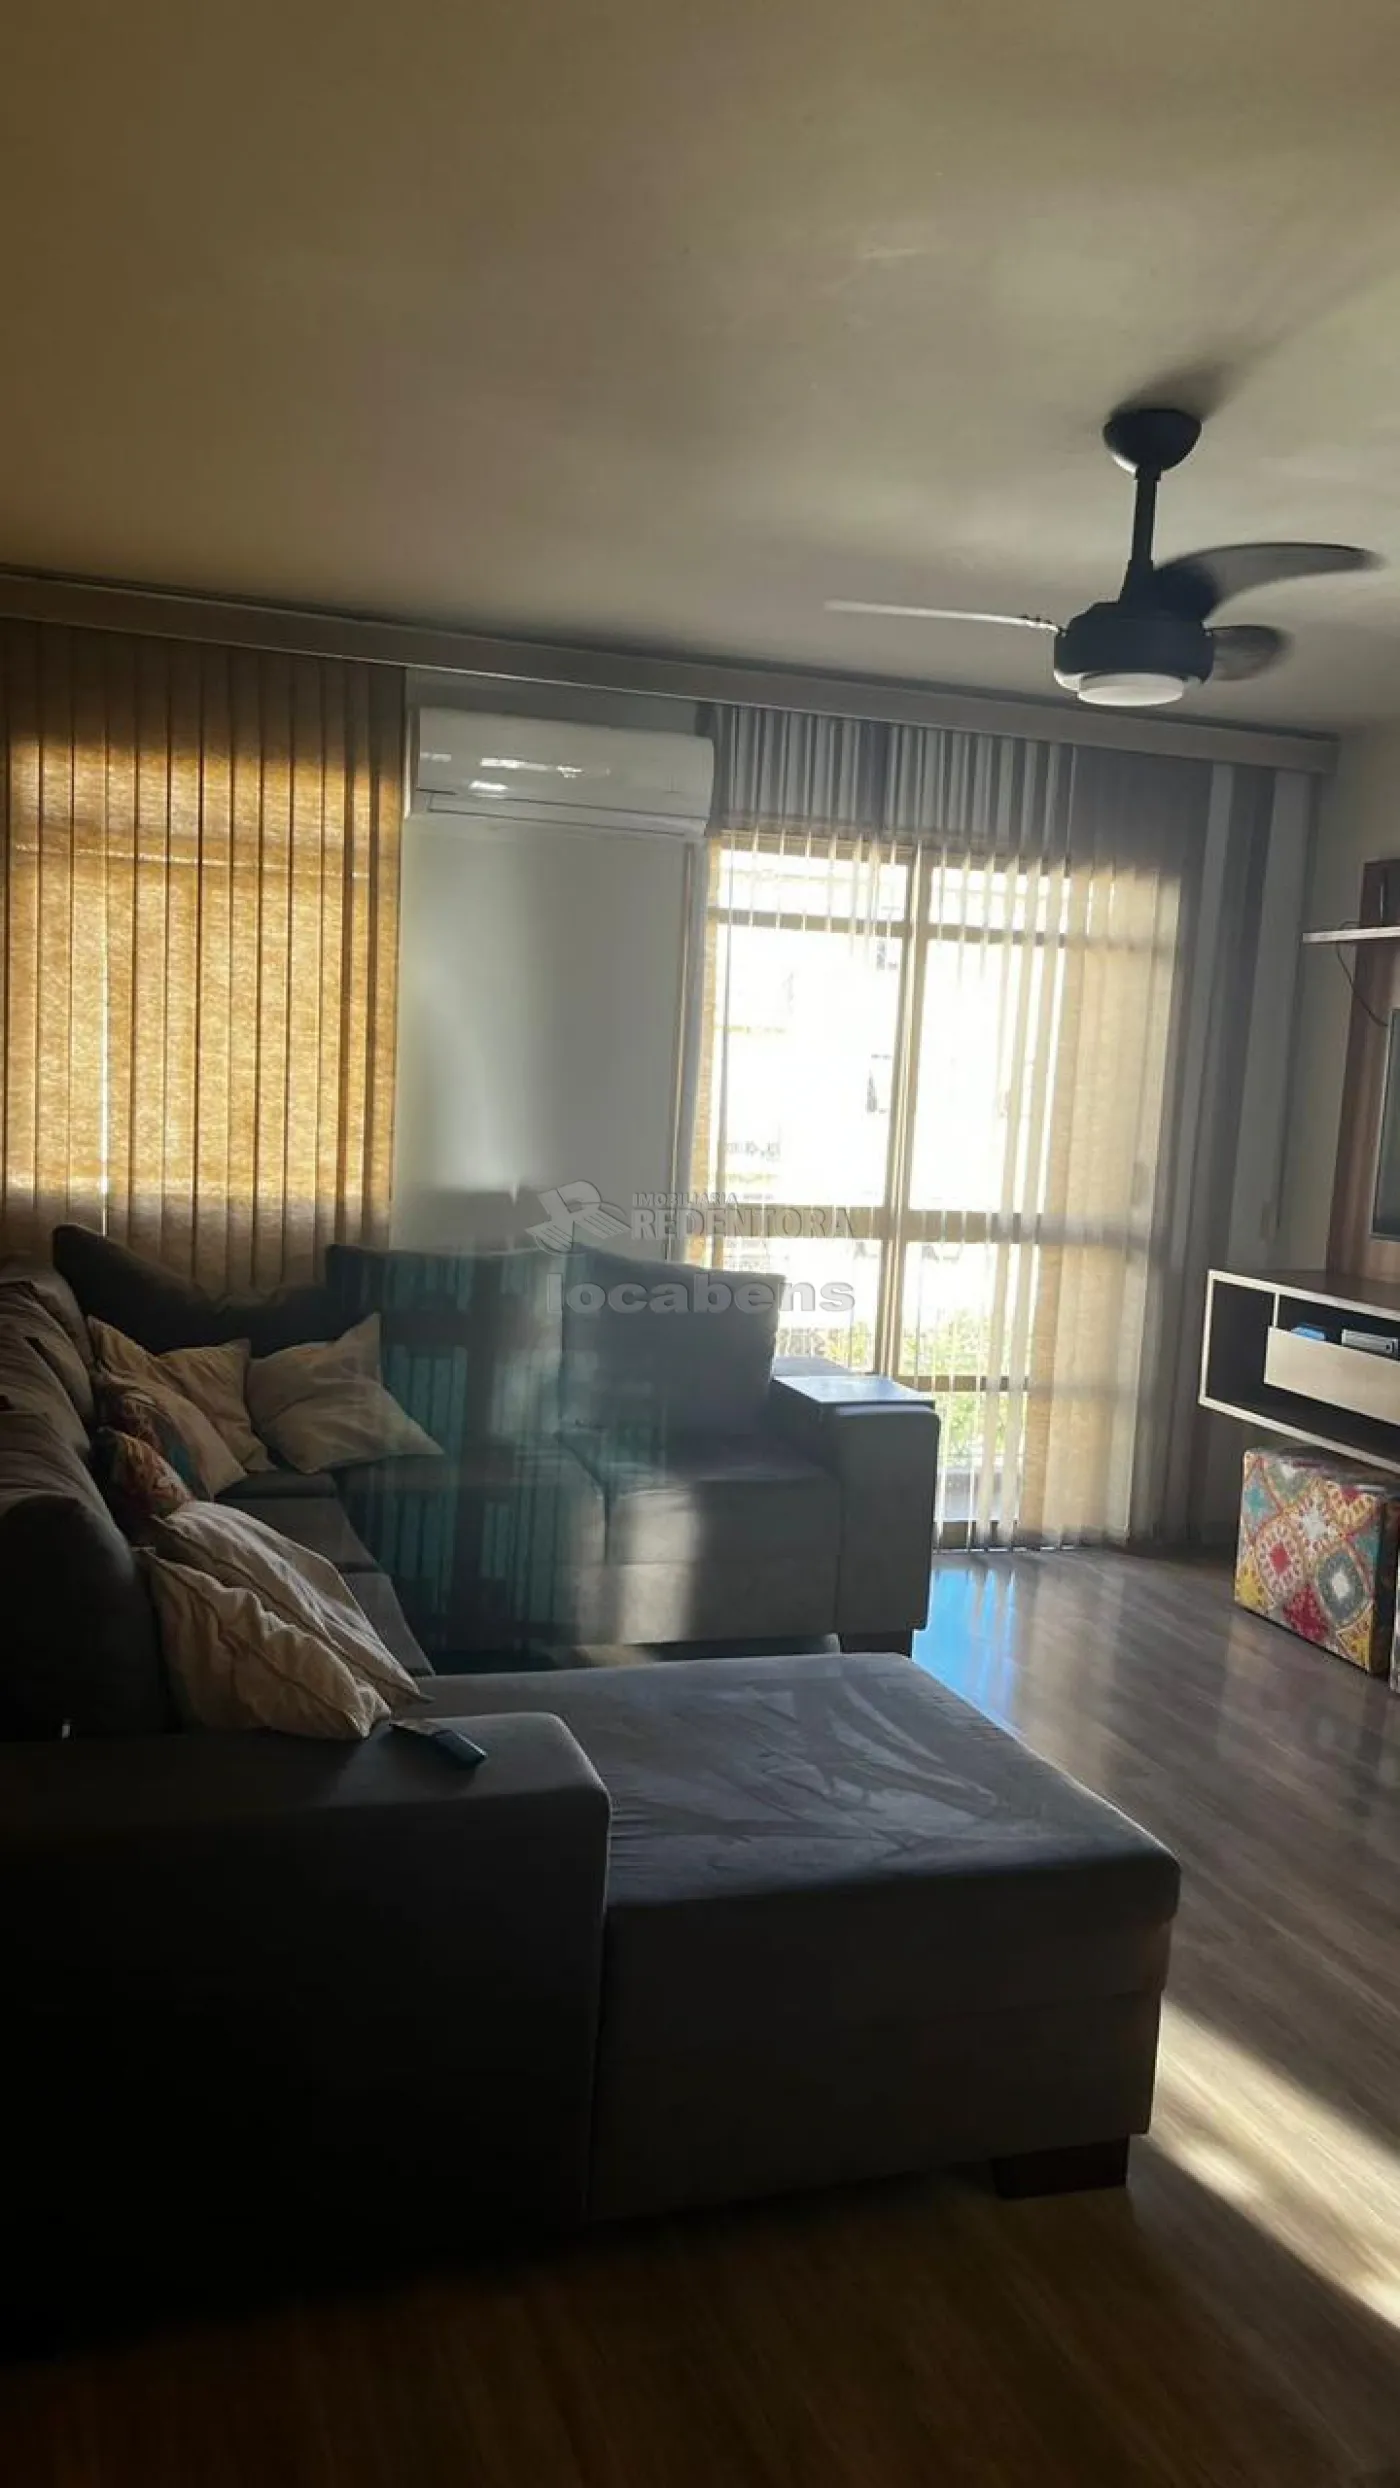 Comprar Apartamento / Padrão em São José do Rio Preto R$ 290.000,00 - Foto 4